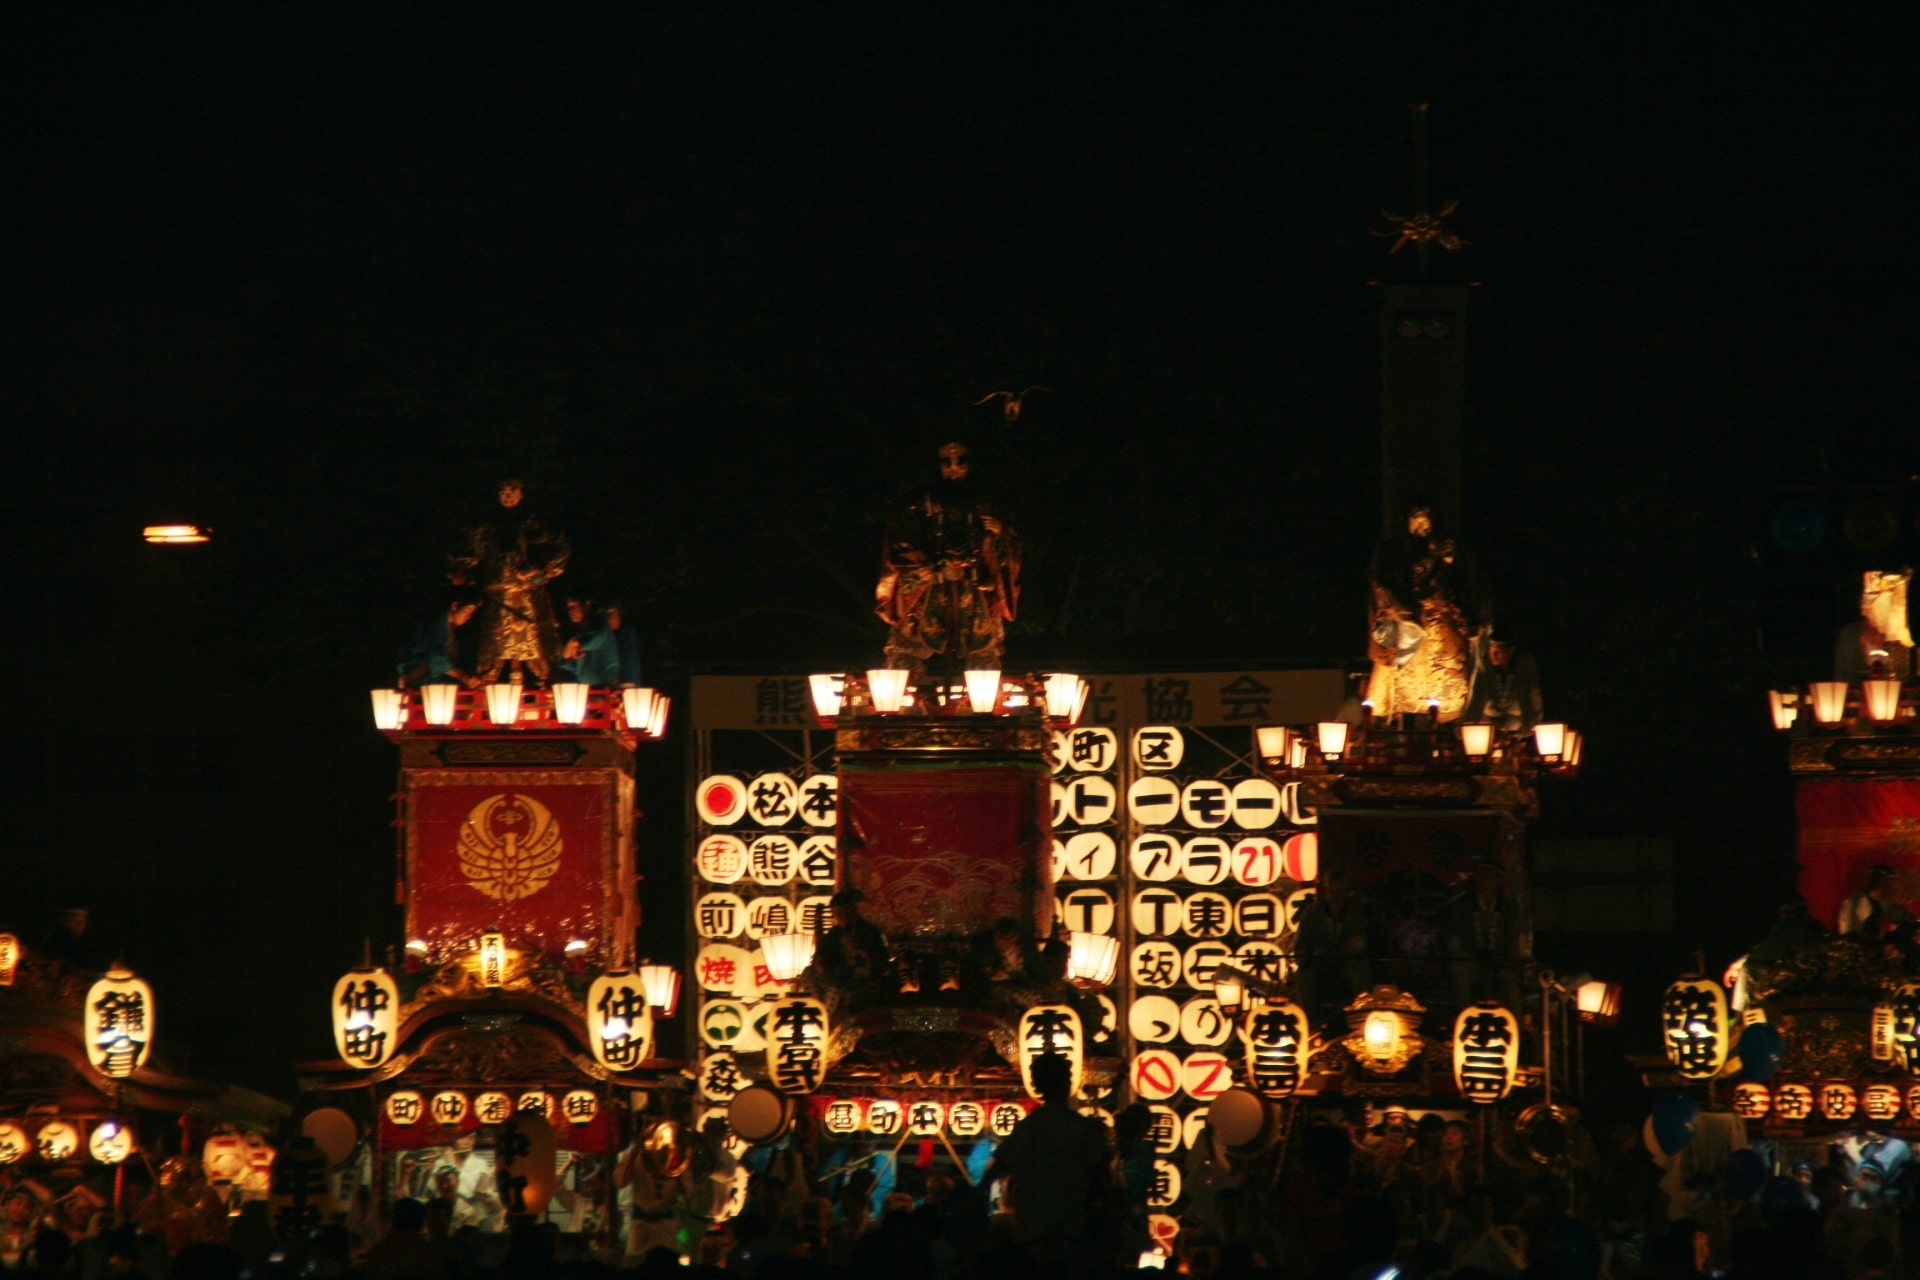 熊谷うちわ祭りの山車が横並びになっている様子